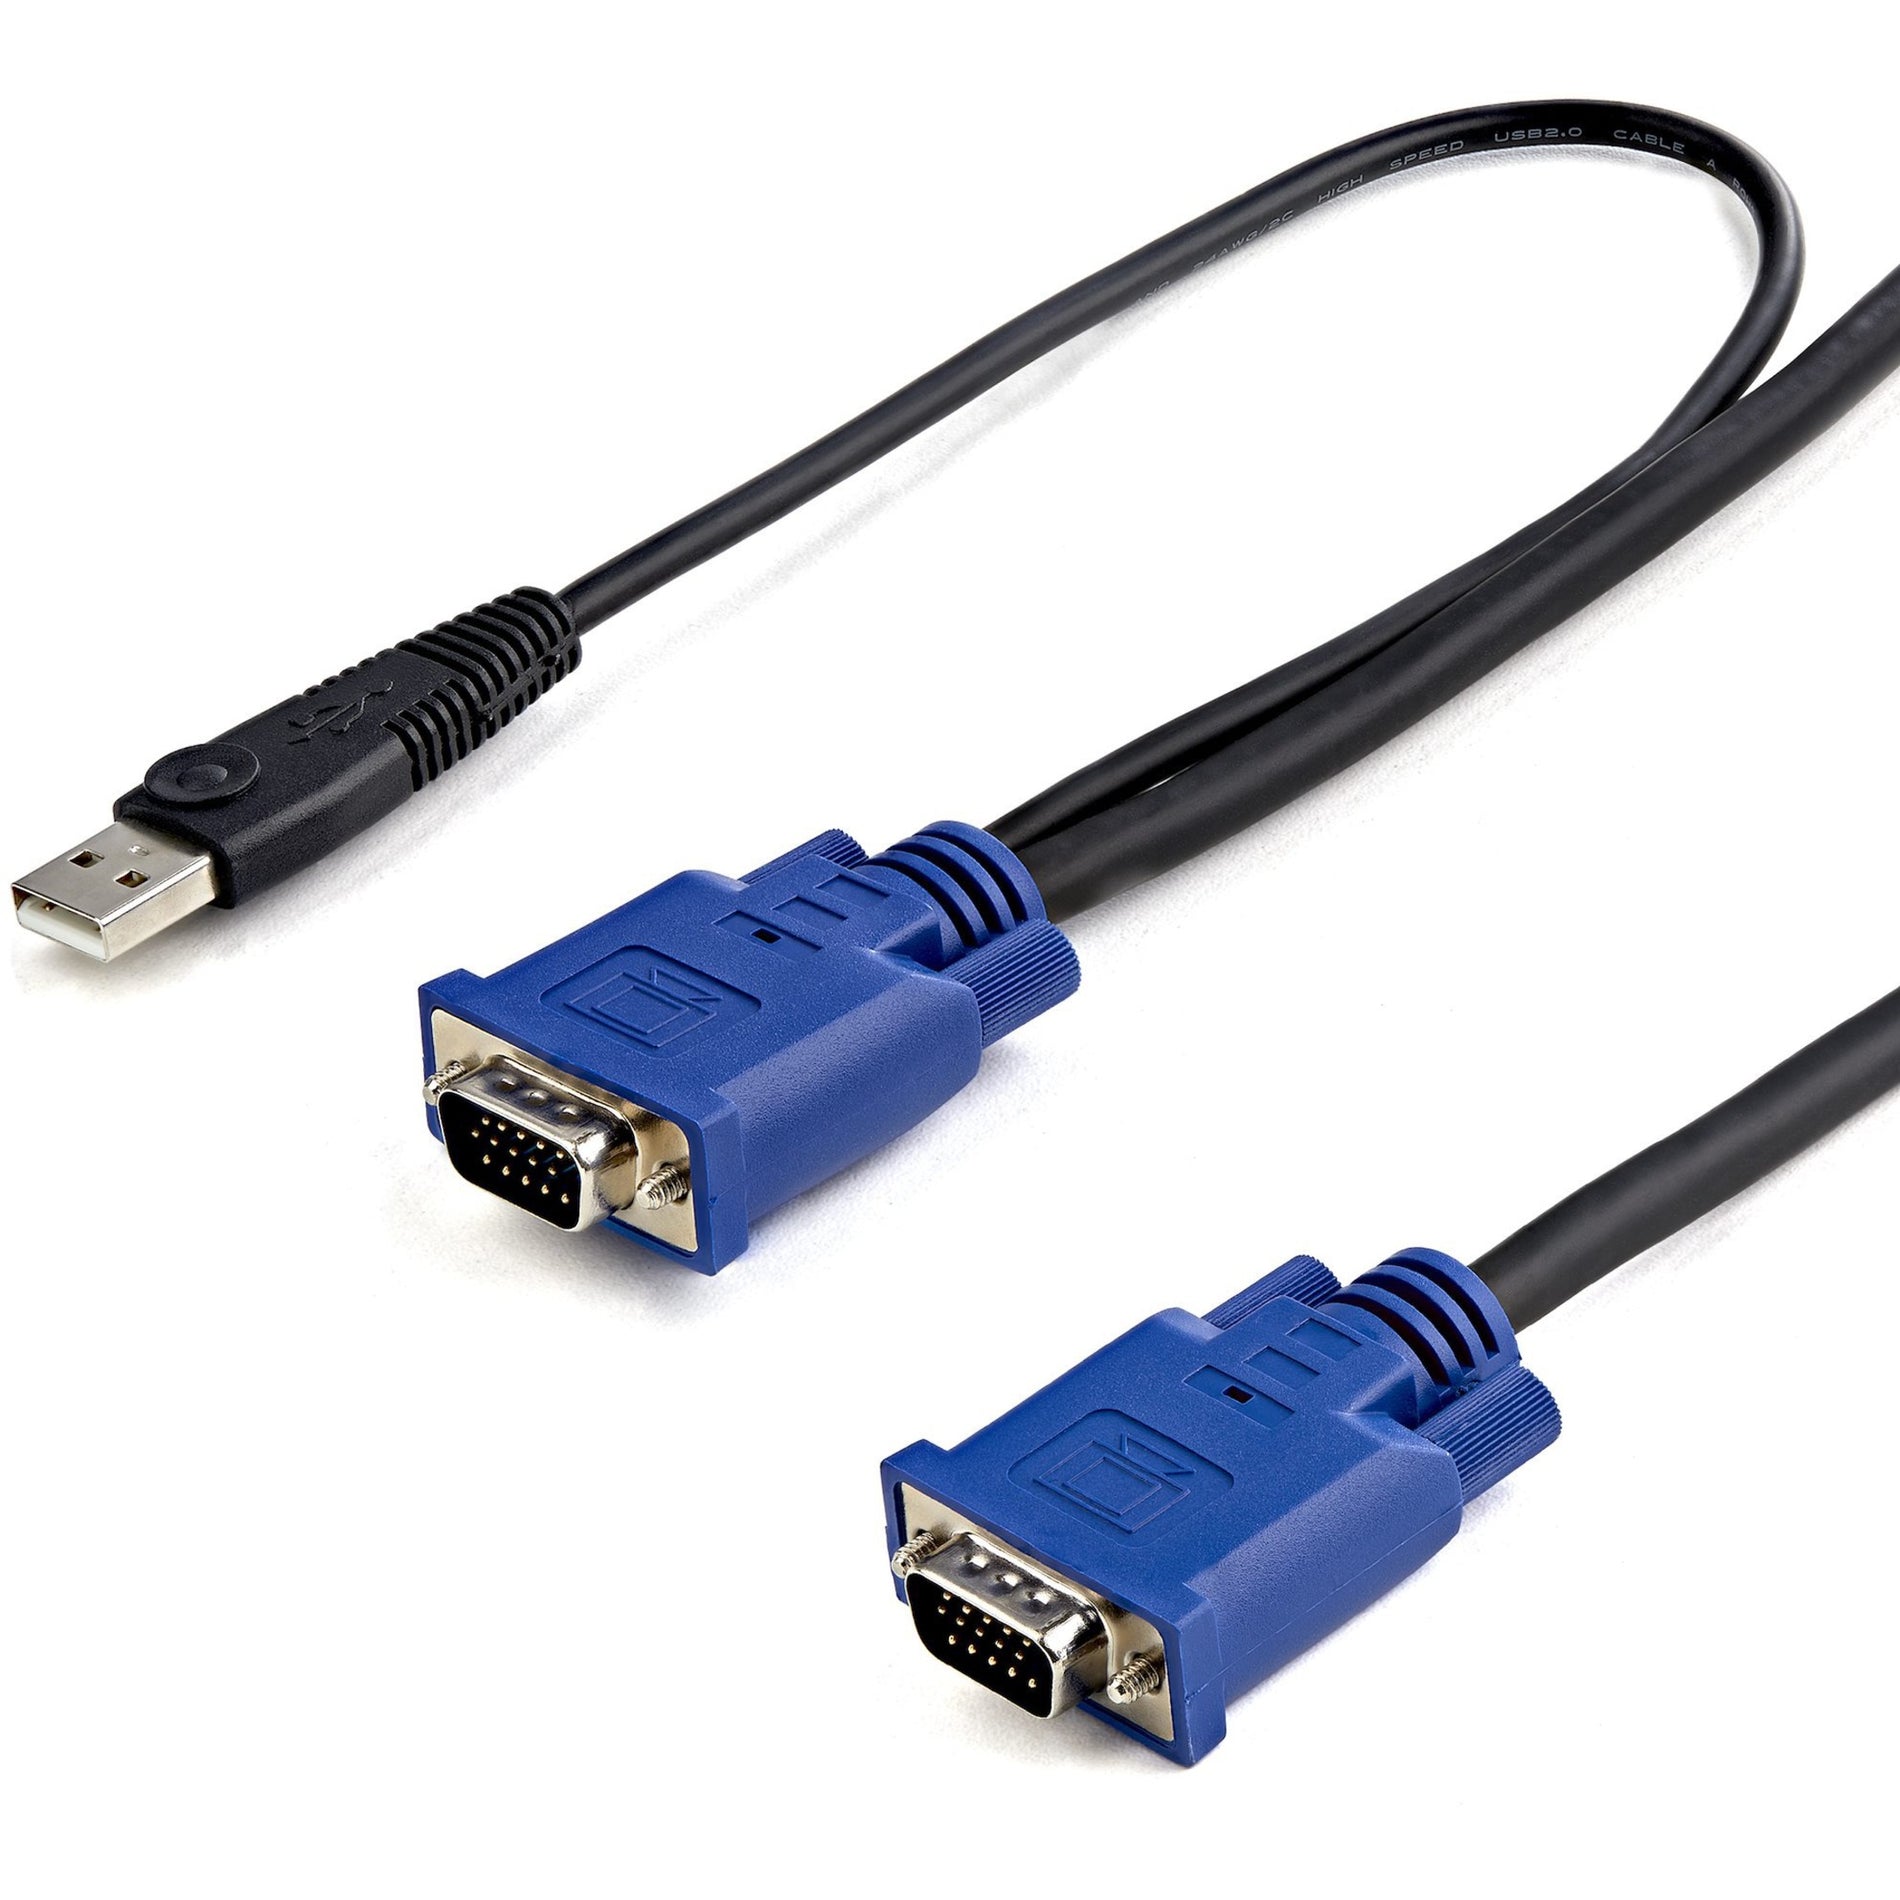 StarTech.com SVECONUS6 Ultra Thin USB KVM Cable, 6 ft, Tangle-free, Black